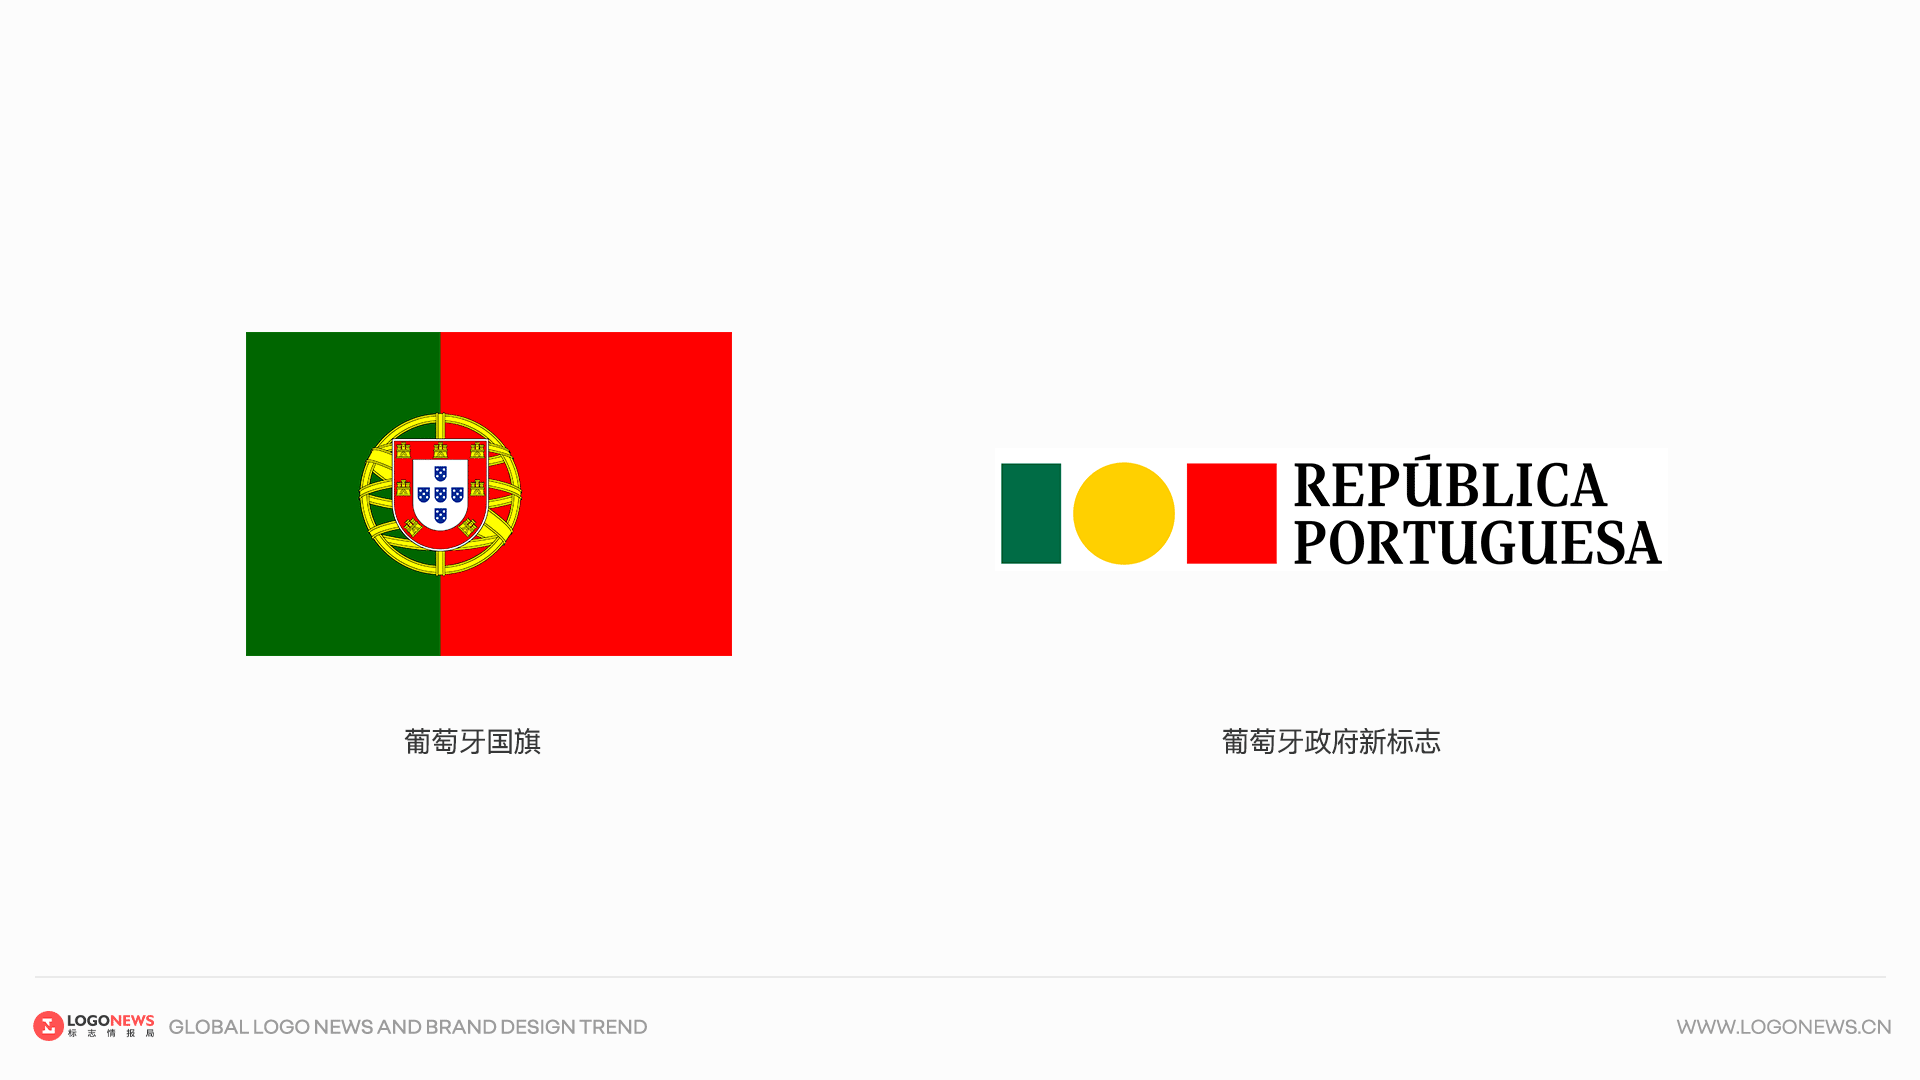 葡萄牙政府設計了一個極簡的新標誌 2